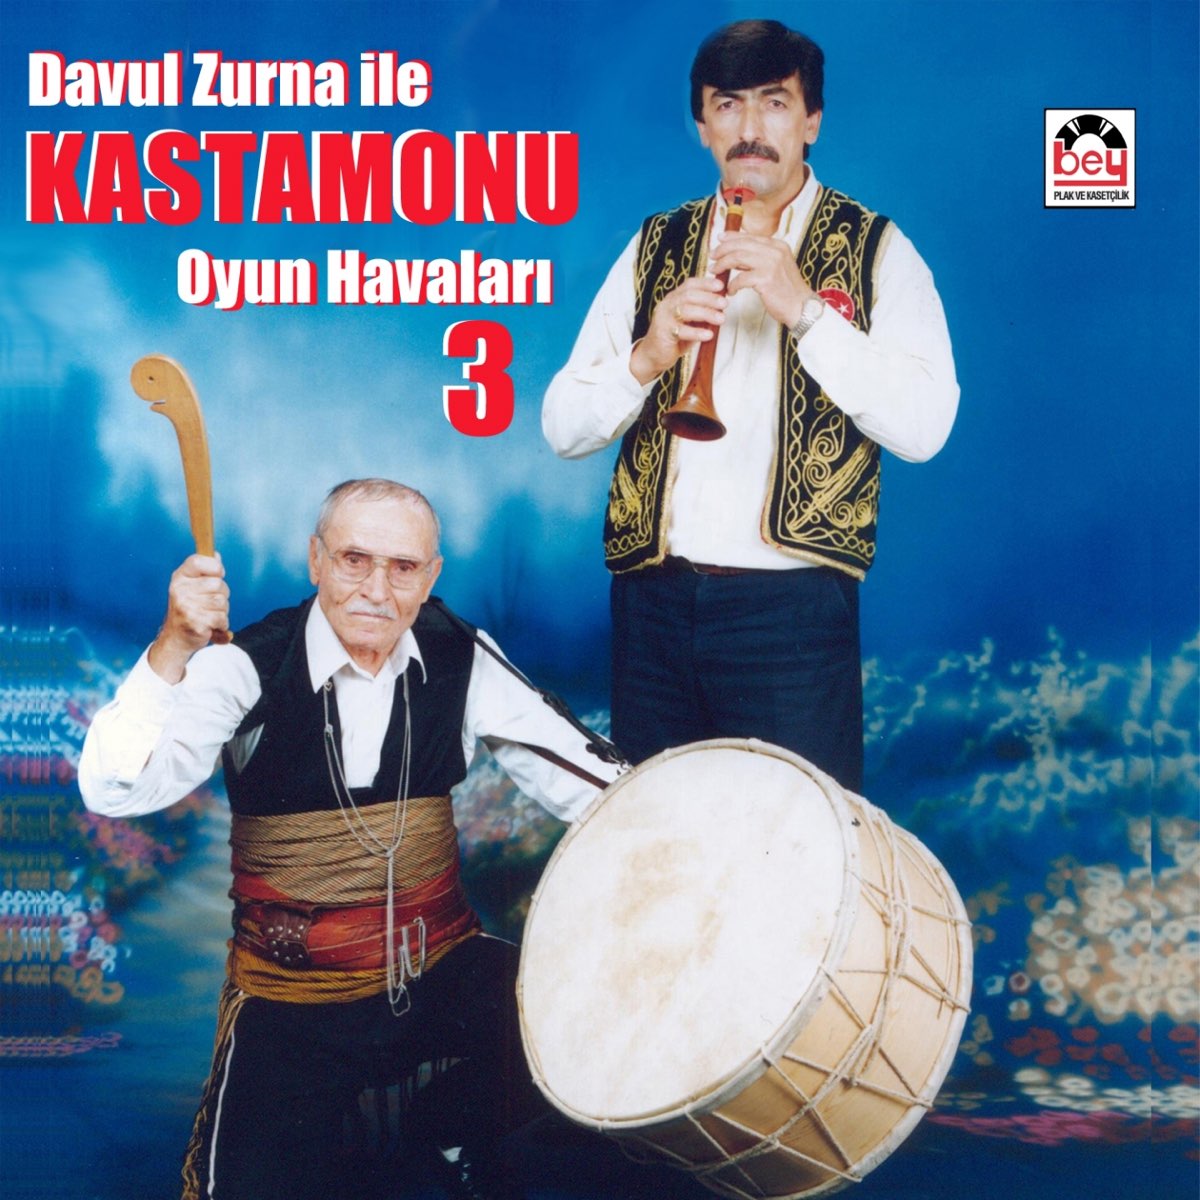 Davul Zurna İle Kastamonu Oyun Havaları, Vol. 3 by Mevlüt Kaplan on Apple  Music